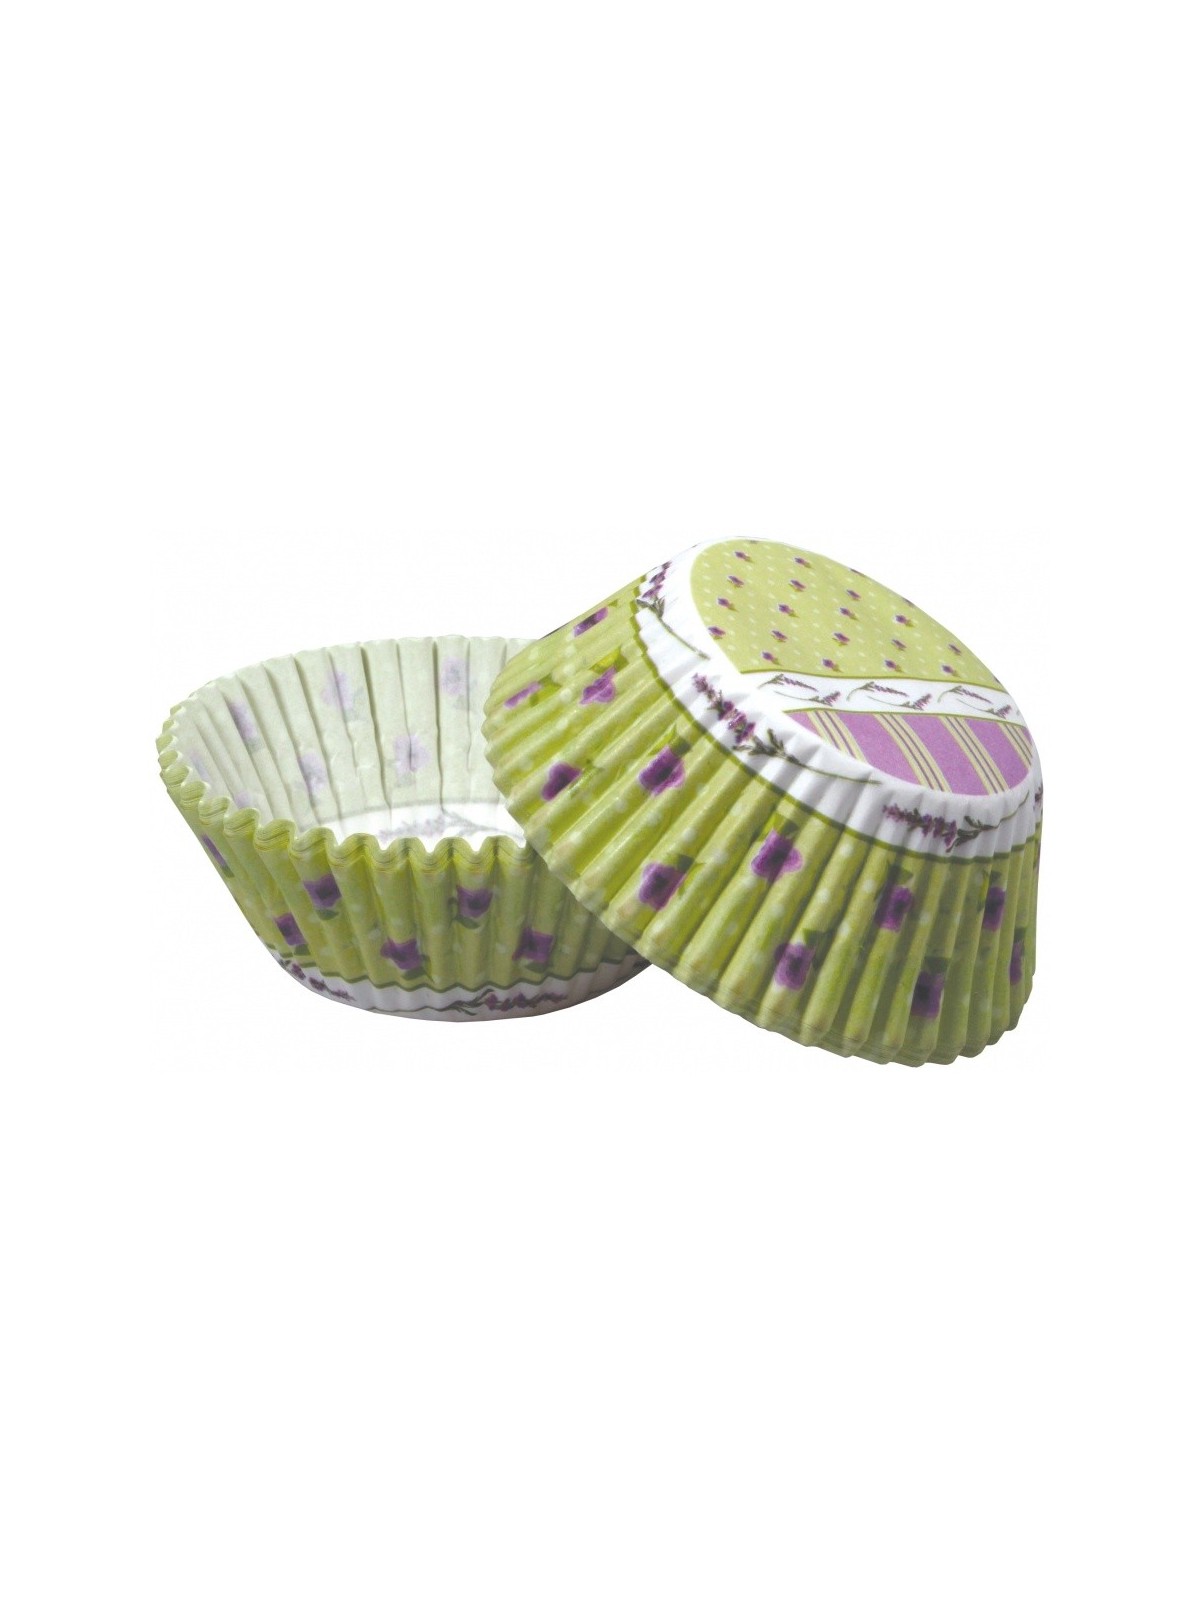 Baking Cups - Lavendel - grün - 50pcs